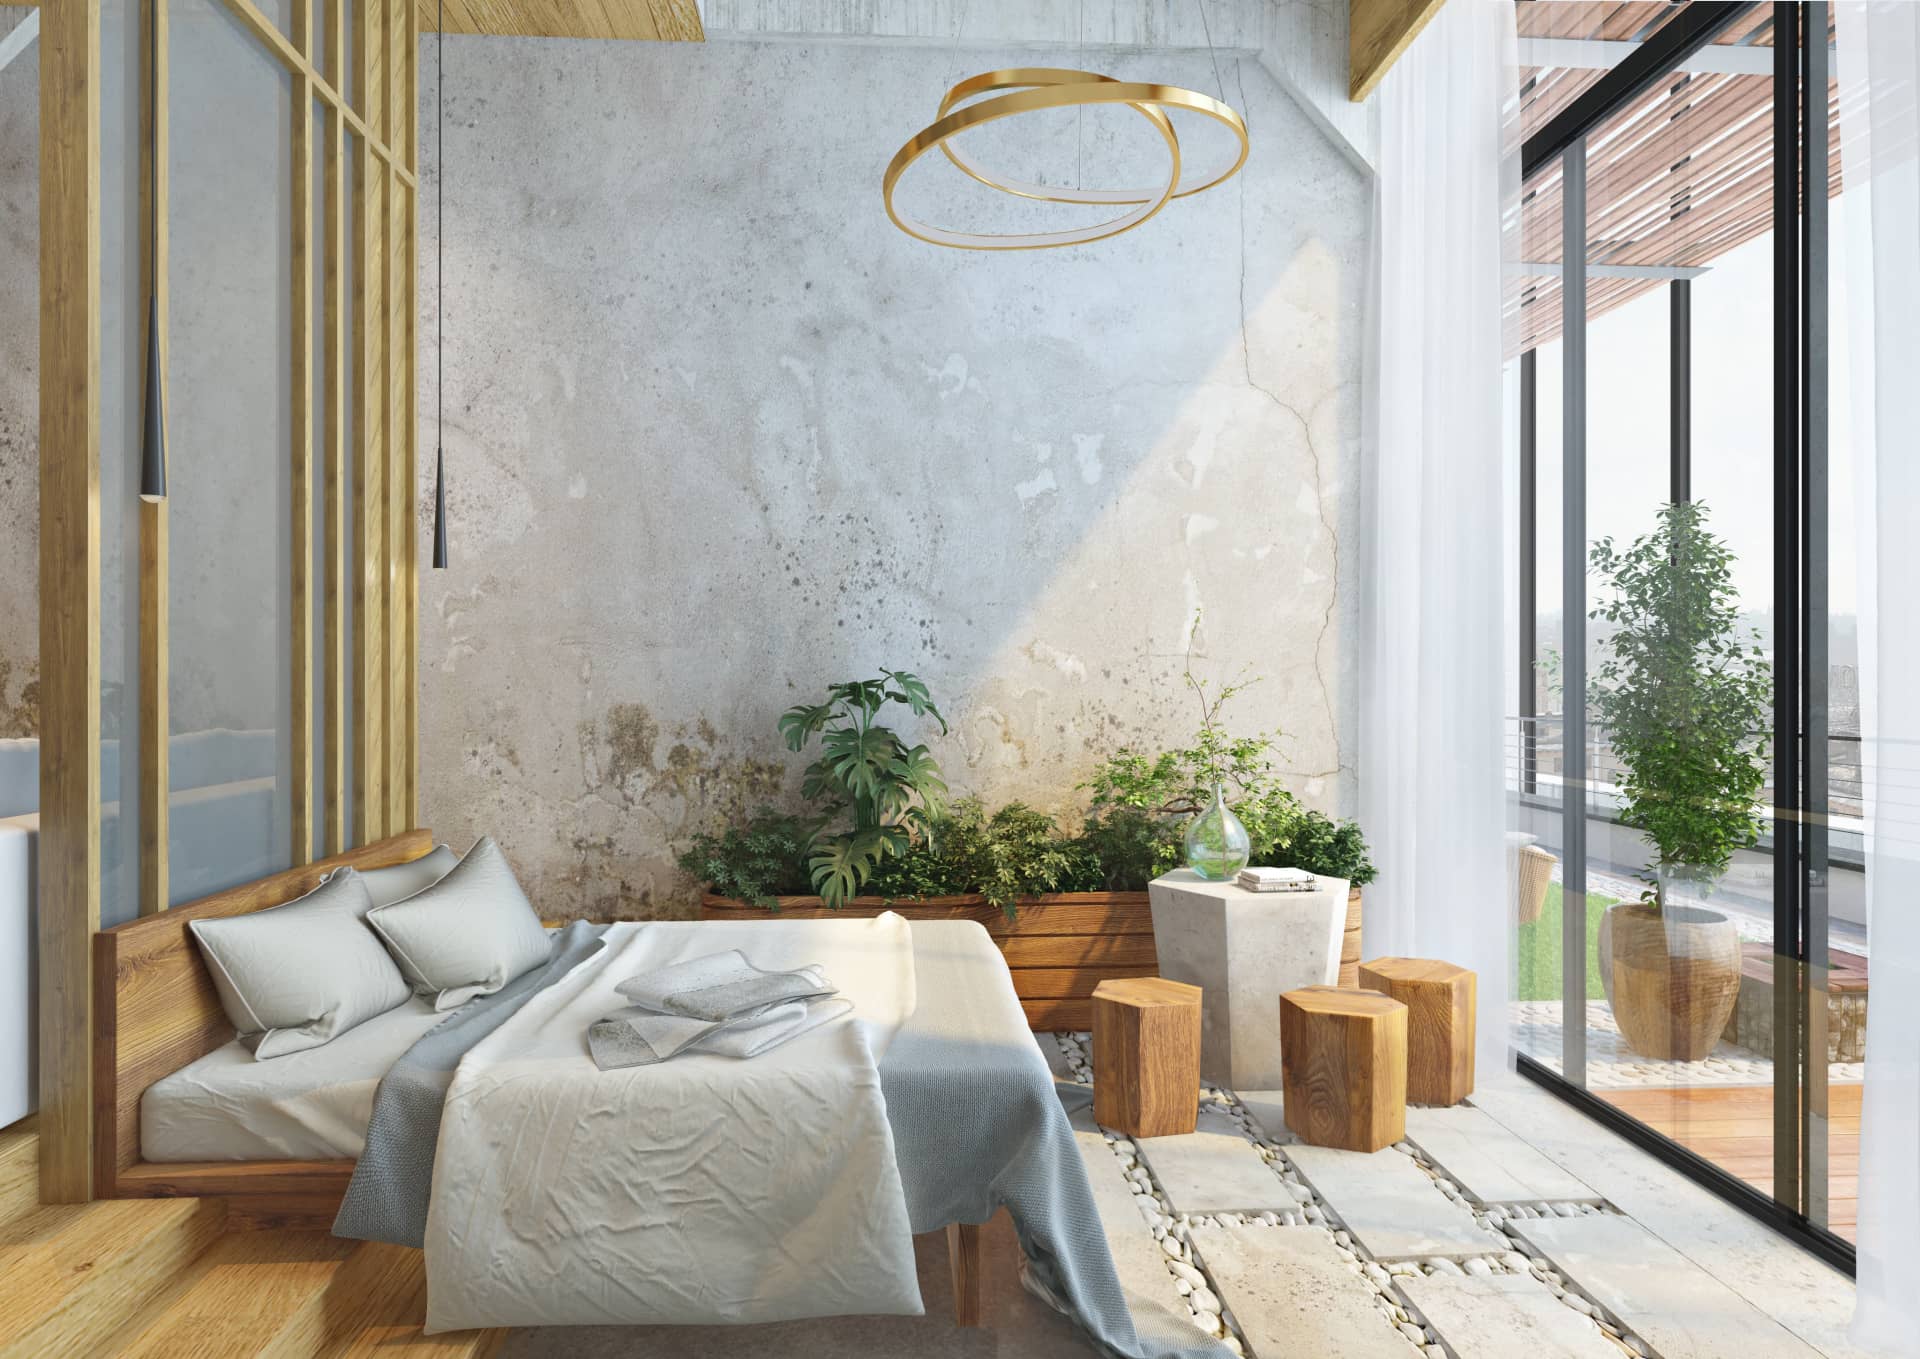 Стены в комнате сделаны под цементный рисунок и добавлены живые растения для живости интерьера